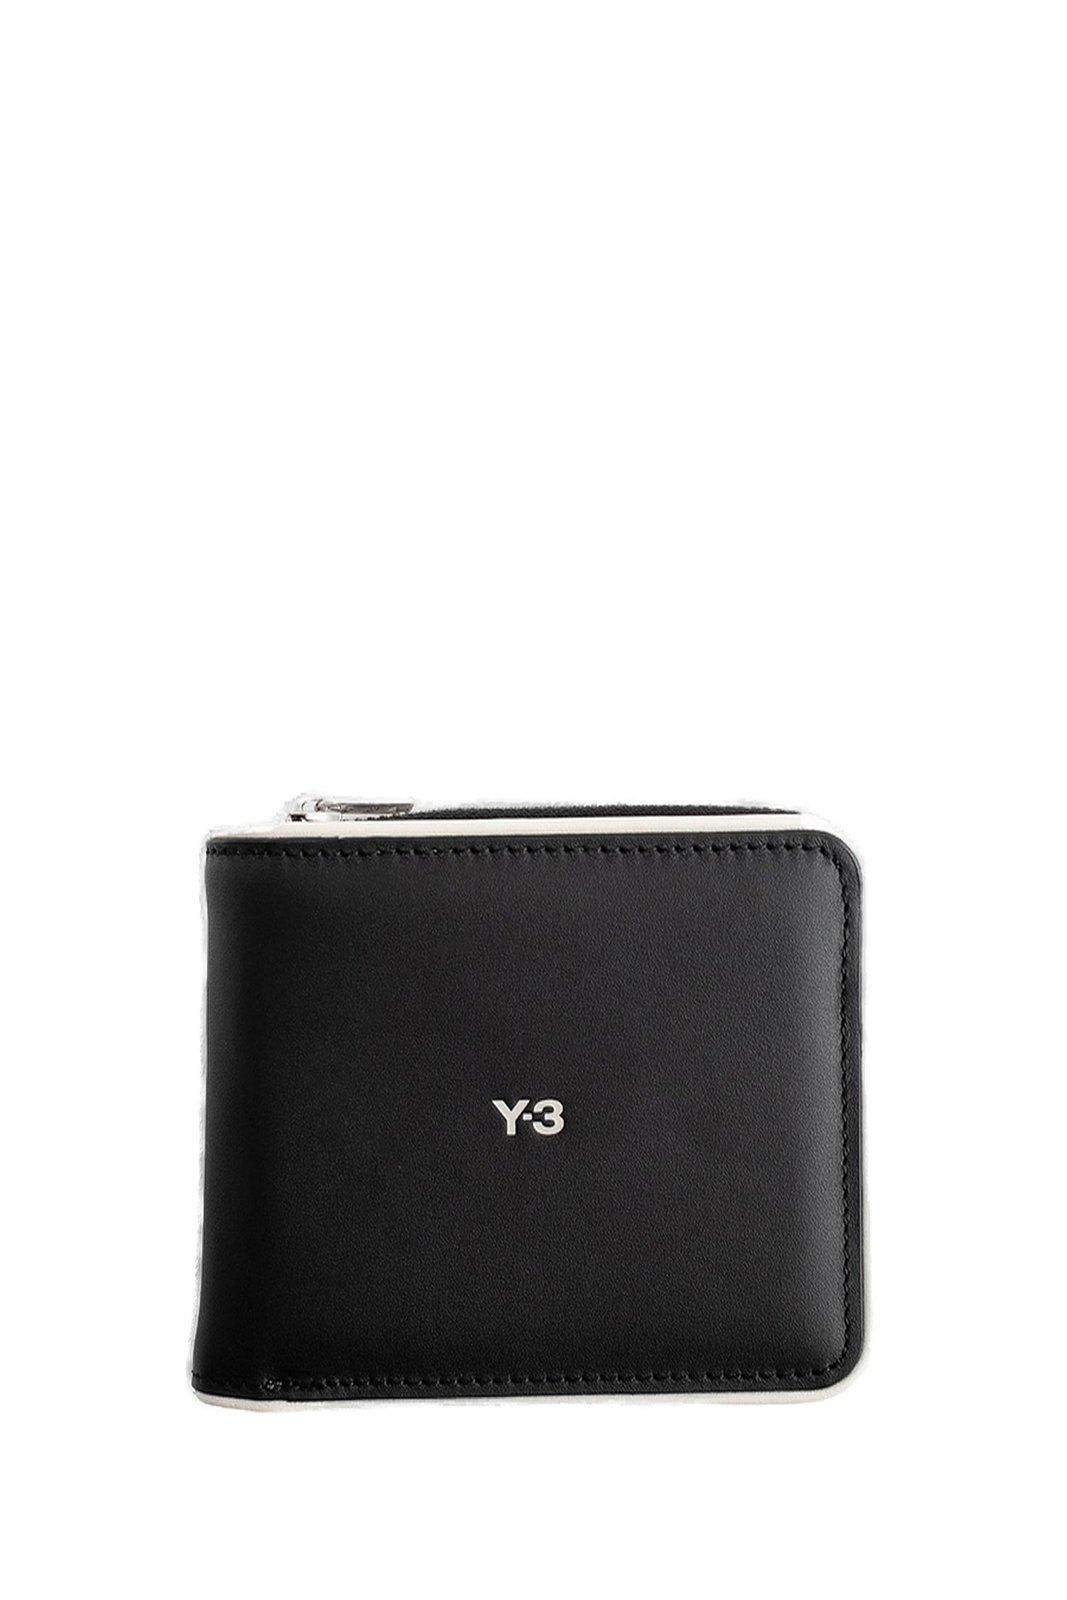 Y-3 Logo Printed Zipped Wallet In Black